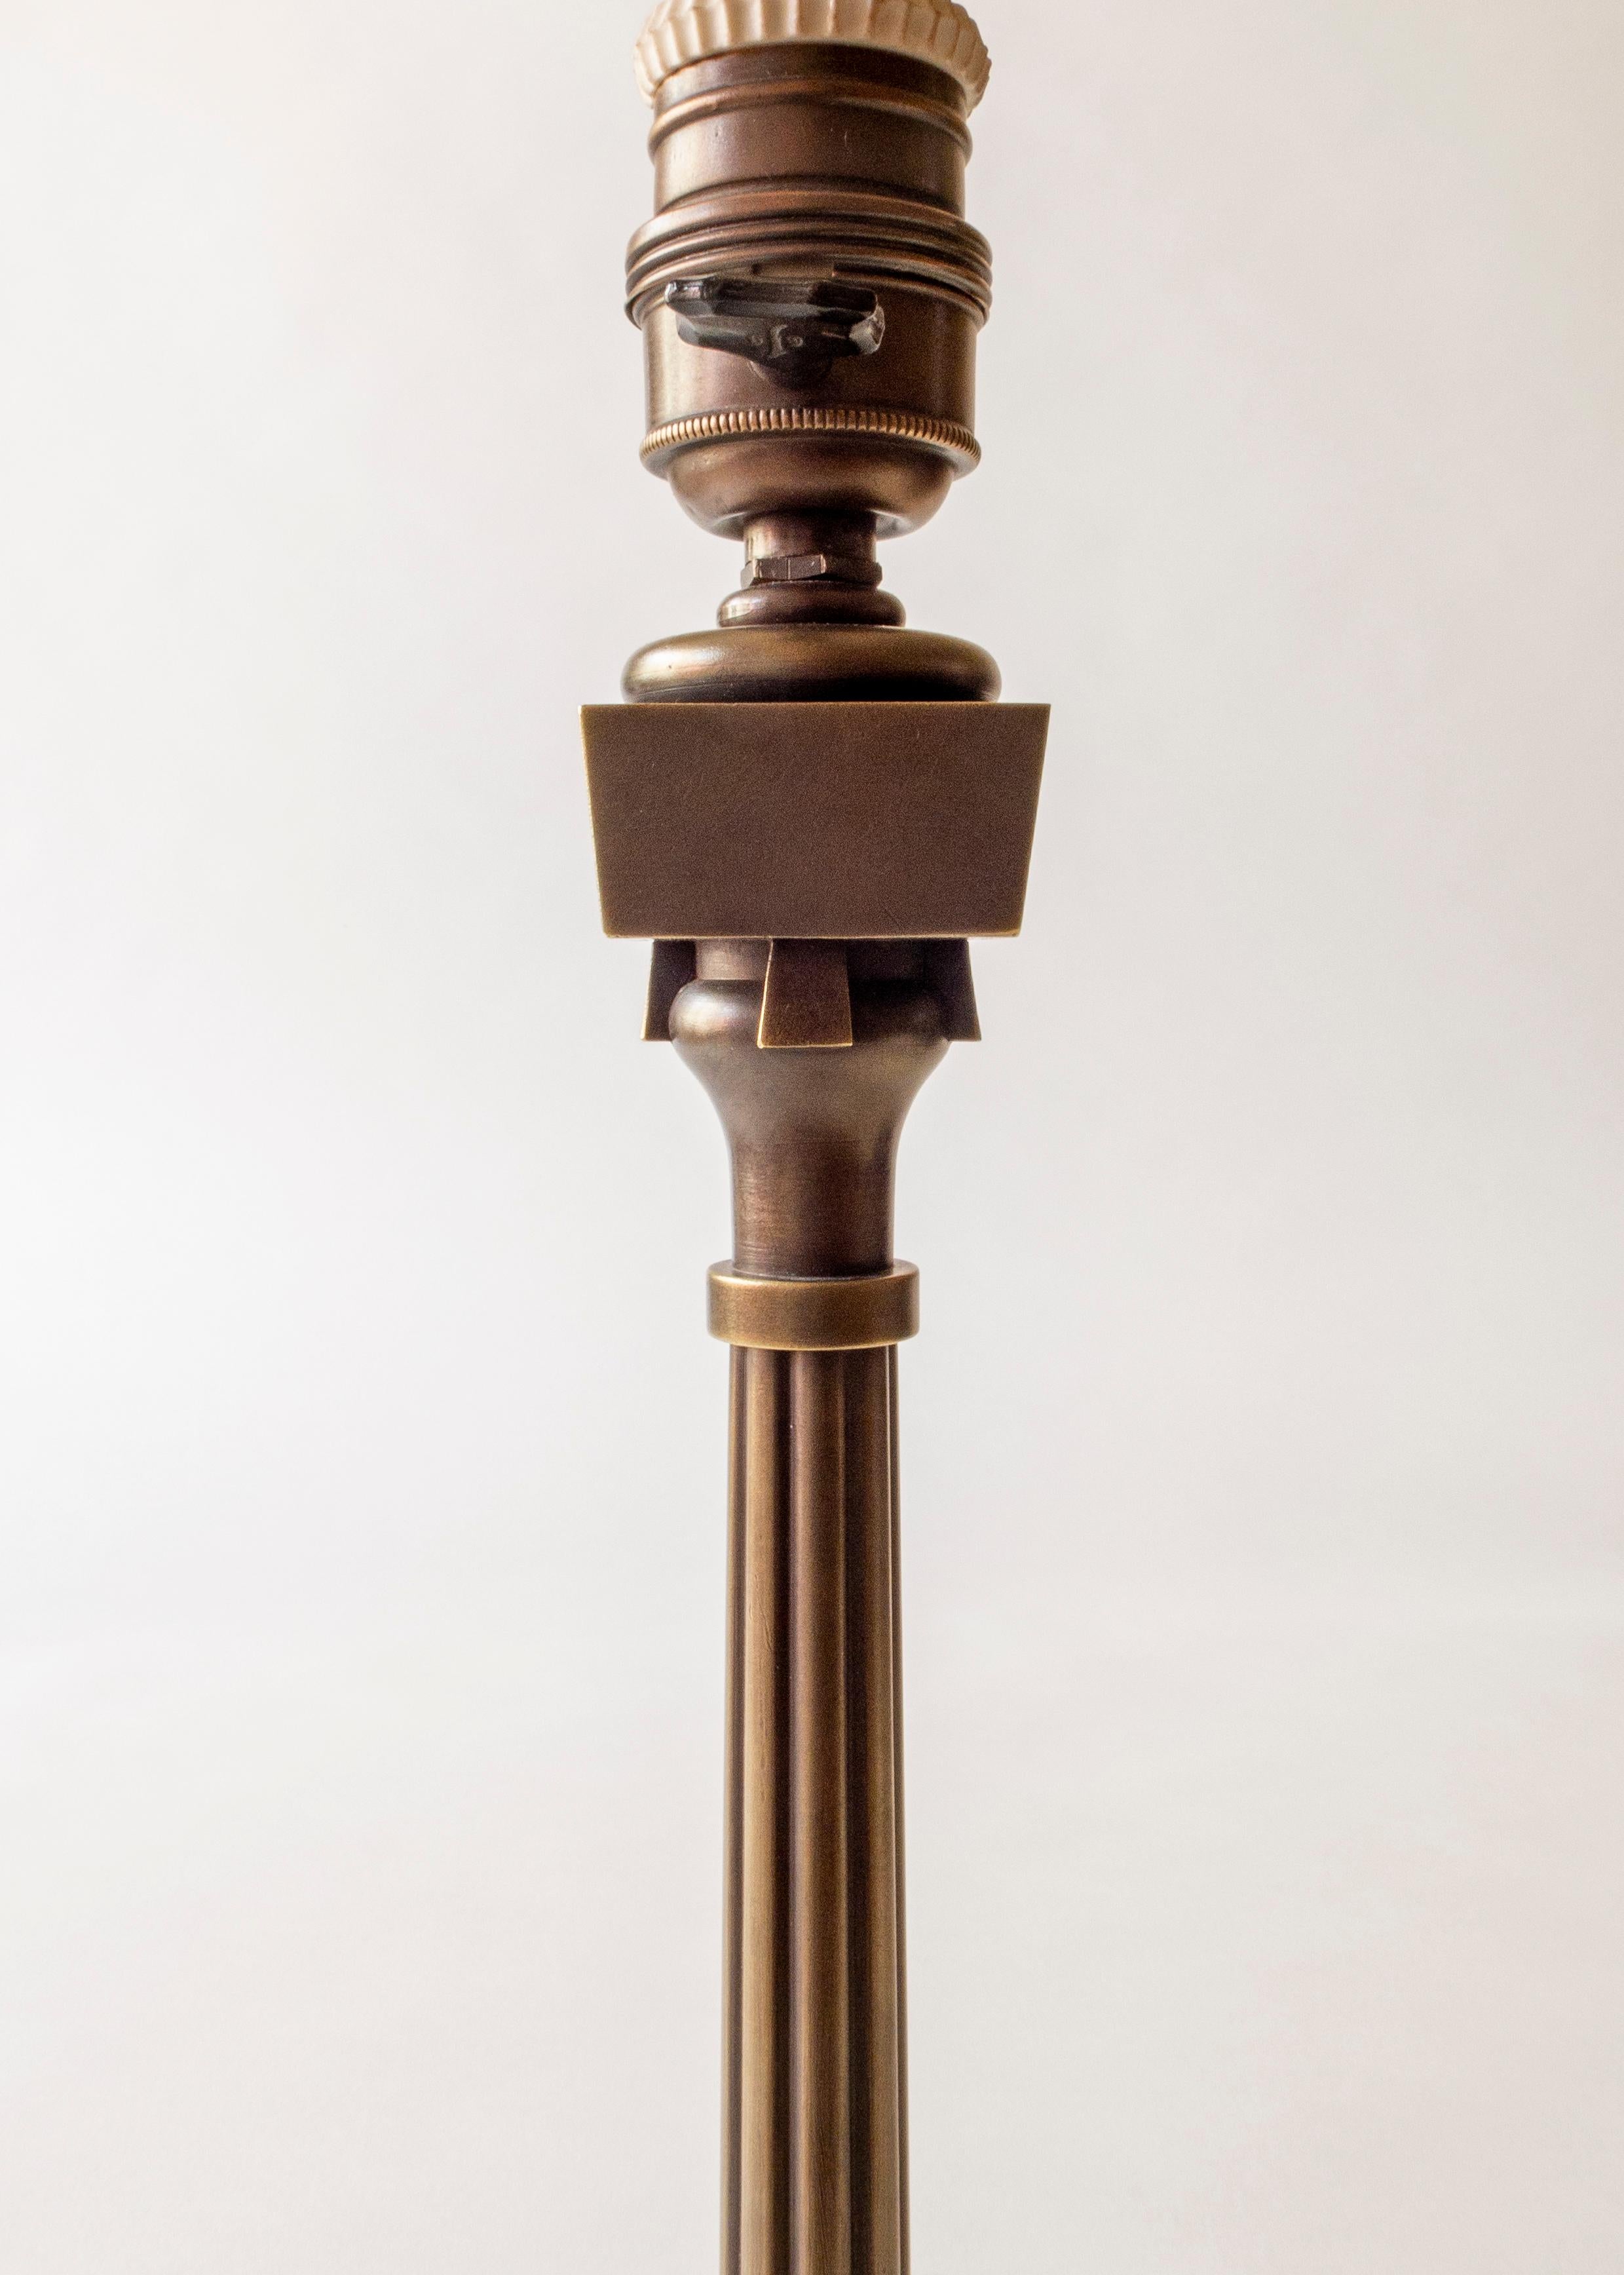 Jugendstil Thorvald Bindesbøll, Small Danish Patinated Brass Jugend Table Lamp